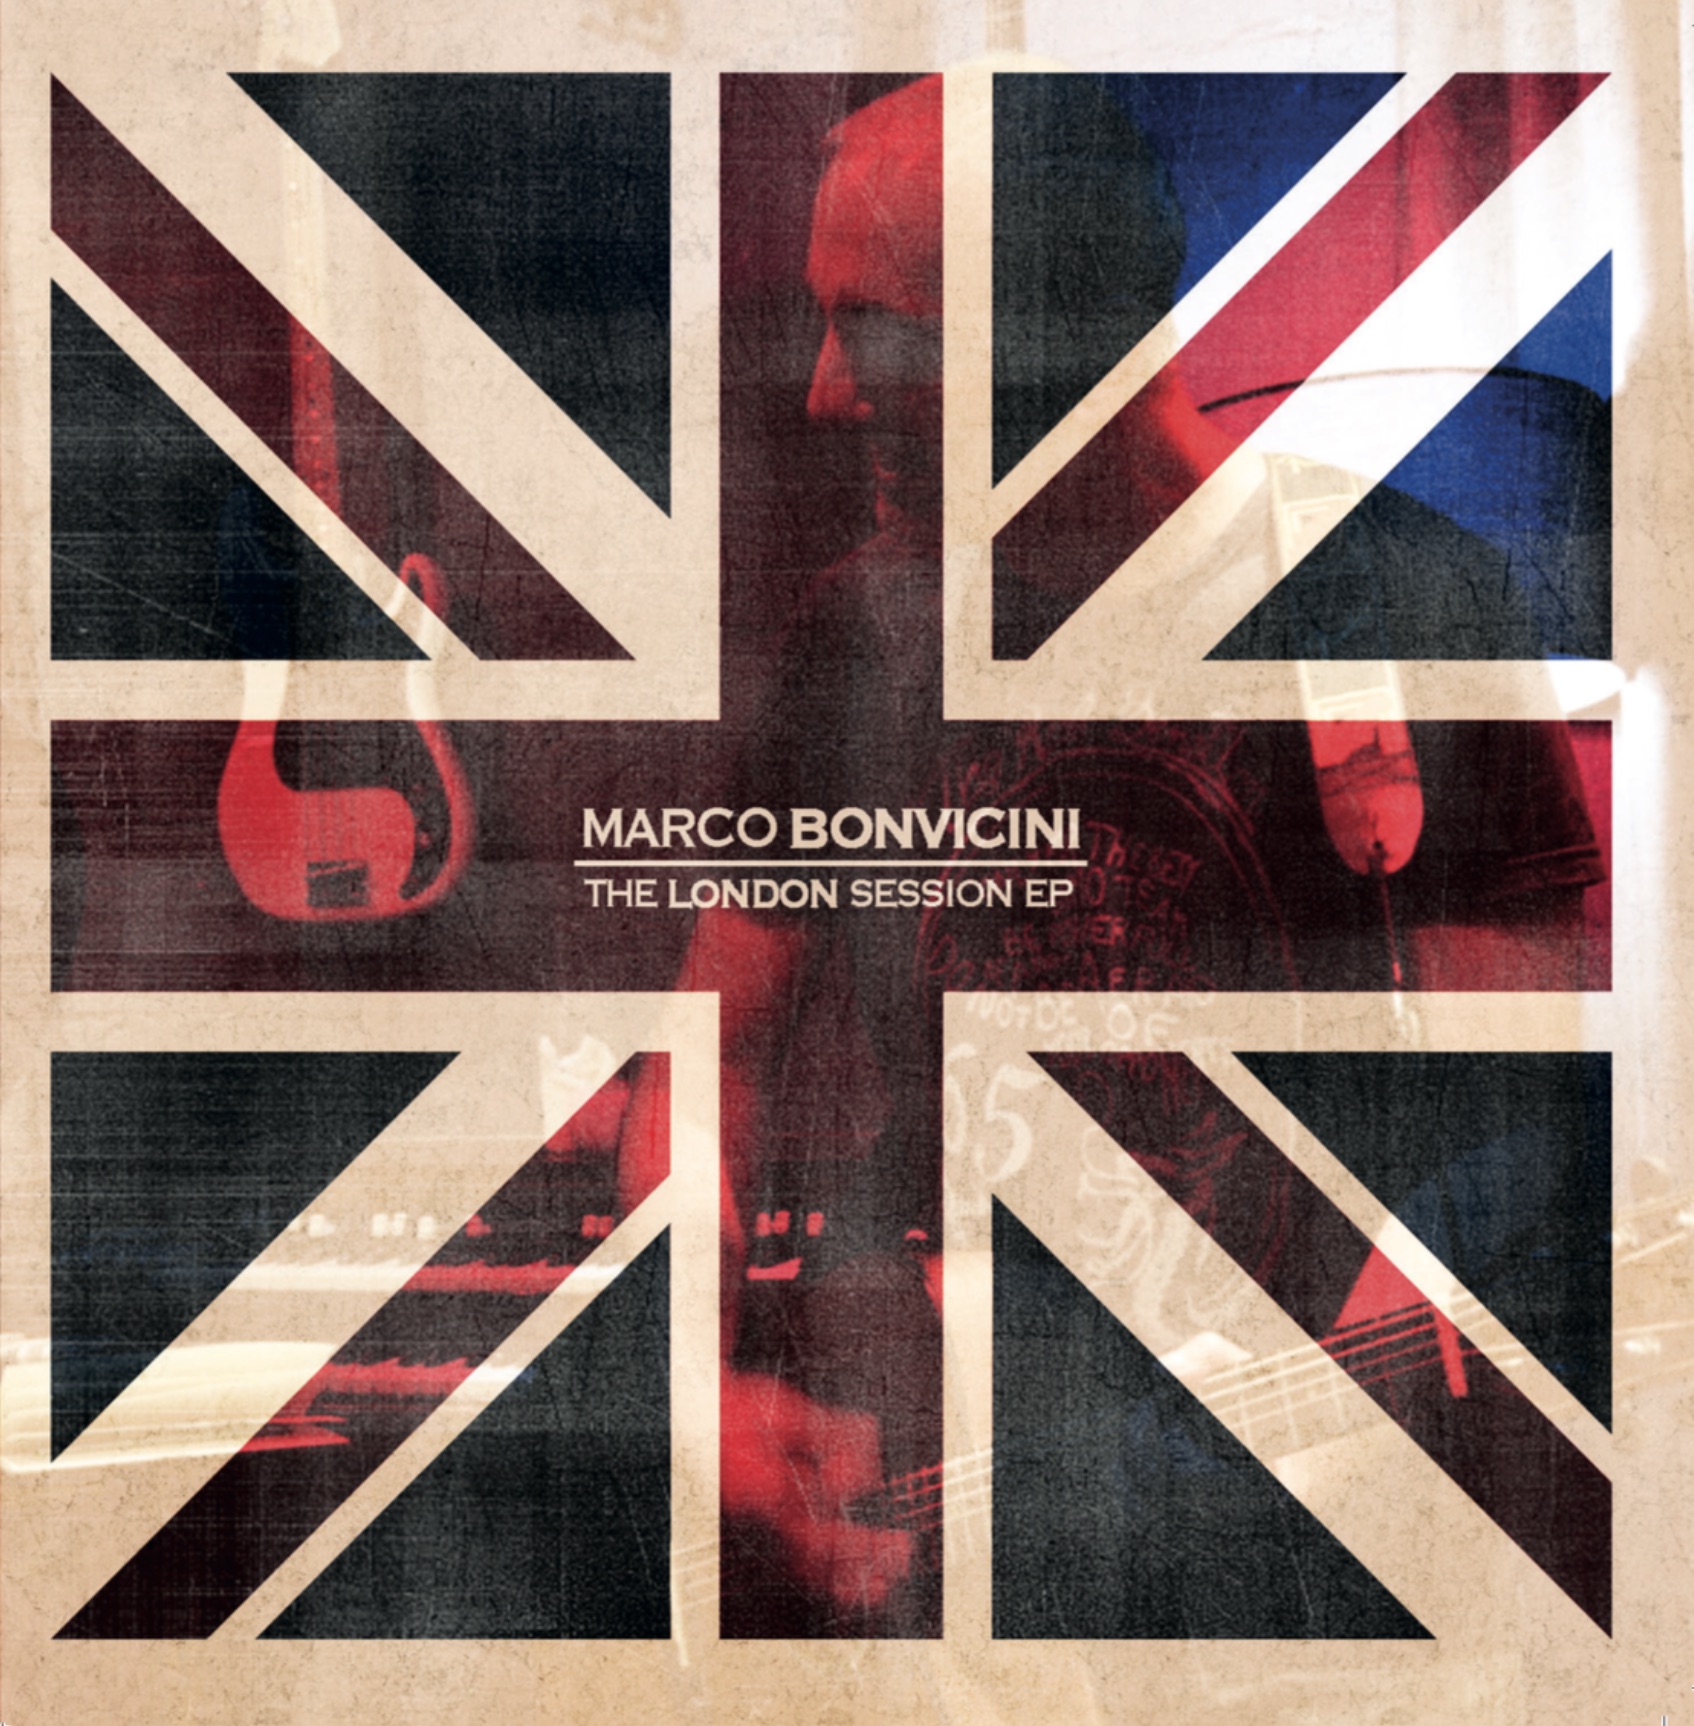 MARCO BONVICINI: in arrivo l’EP “The London Session”